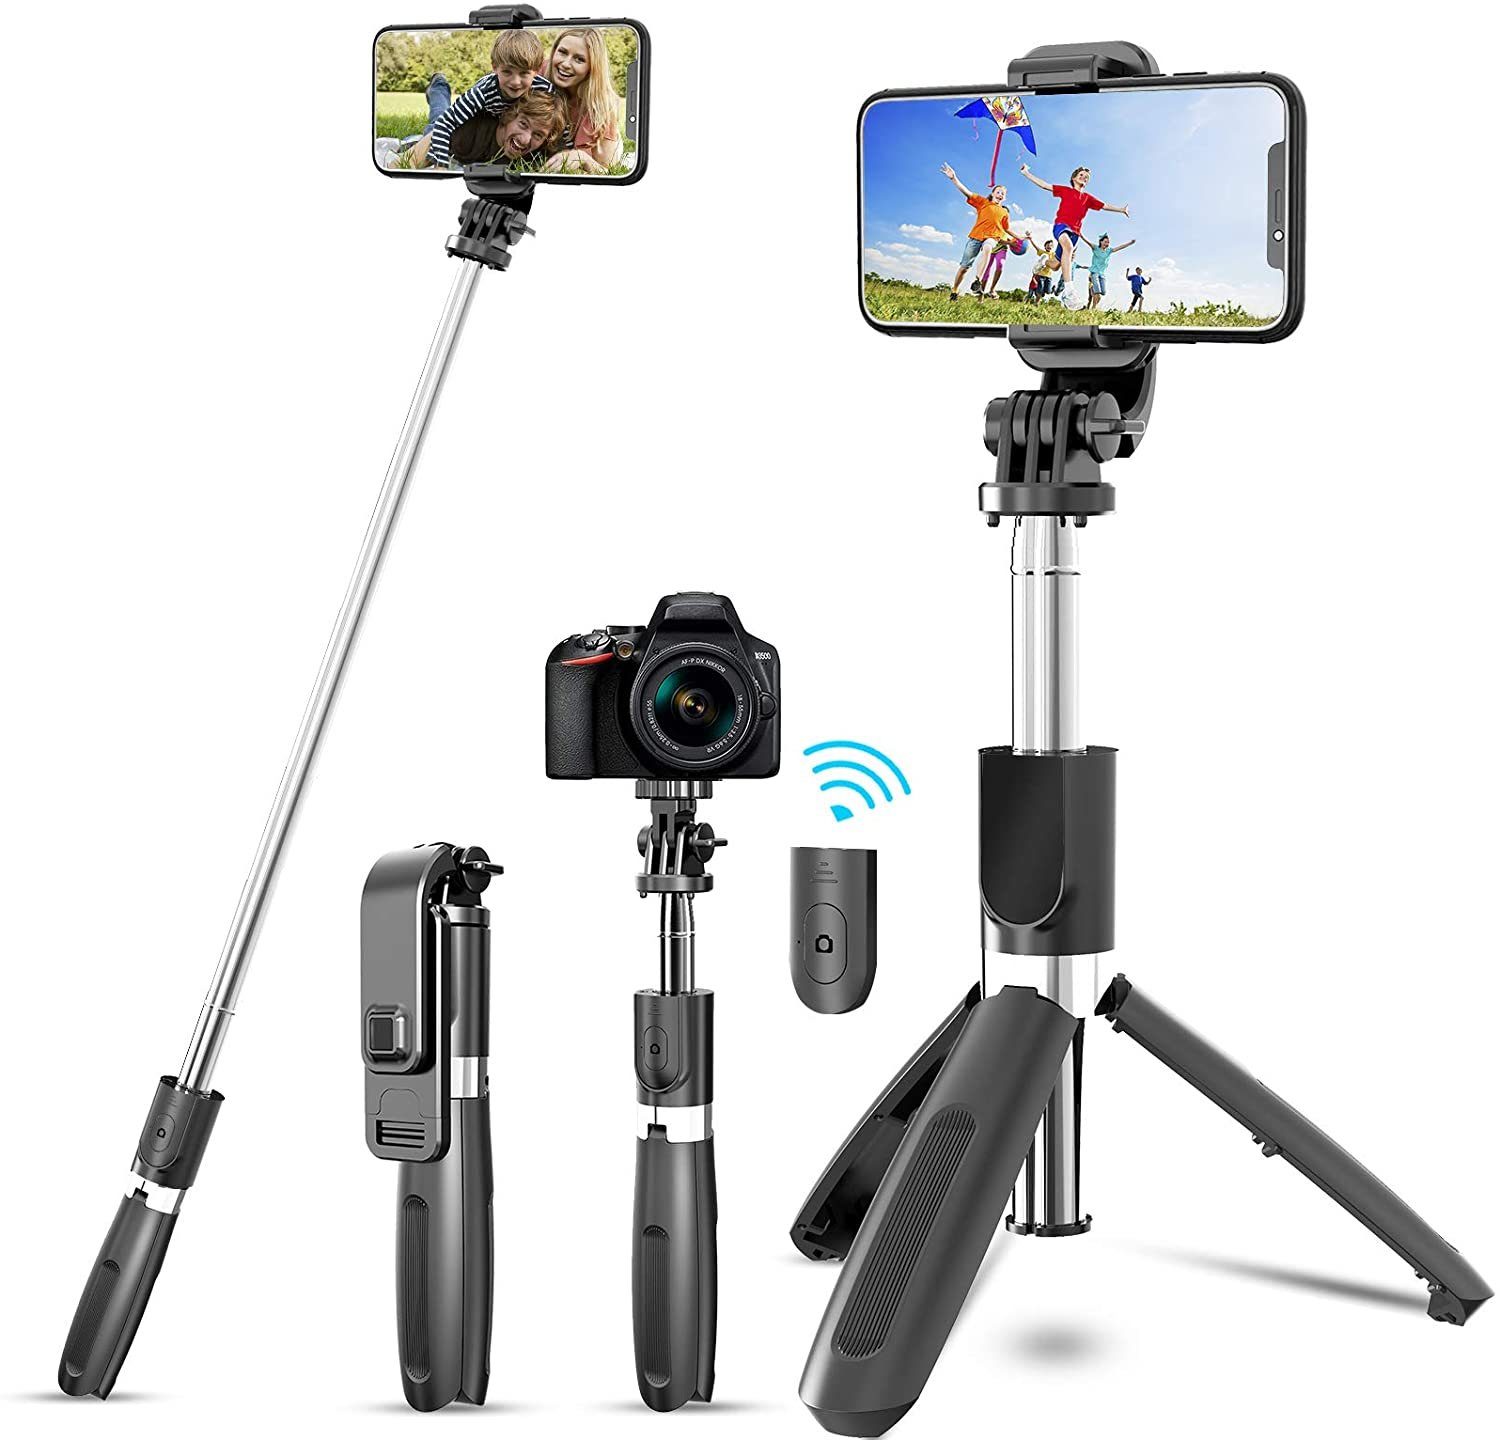 Yokkao Selfie Stick Stangen Stativ 3 in 1 360°schwenkbar mit bis zu 70cm Bluetooth-Fernauslöse Inklusive Stativfunktion für Gopro Kamera Smartphone iPhone 11/ iPhone 11Pro/ iPhone 11Pro Max Schwarz 